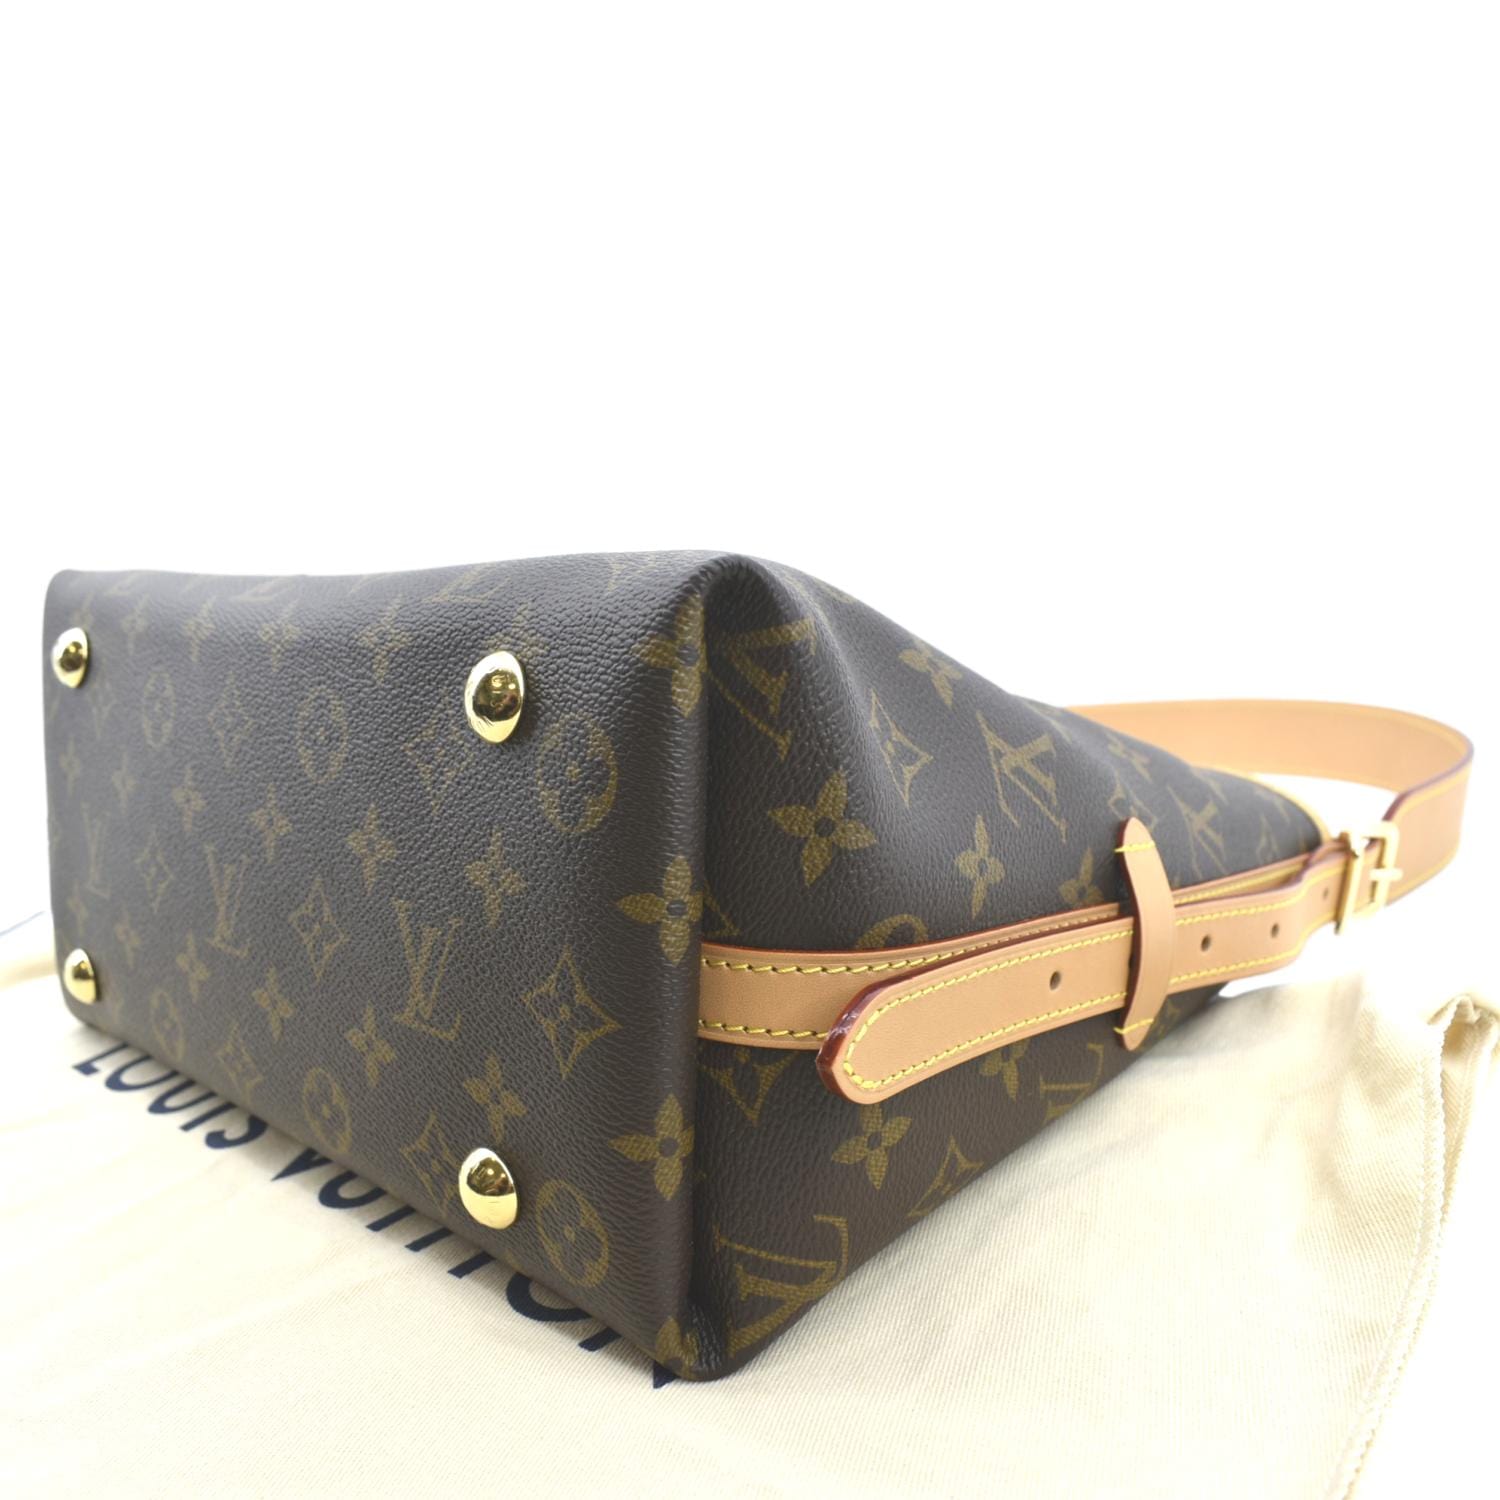 Louis Vuitton Carryall PM Monogram Leather Shoulder Bag